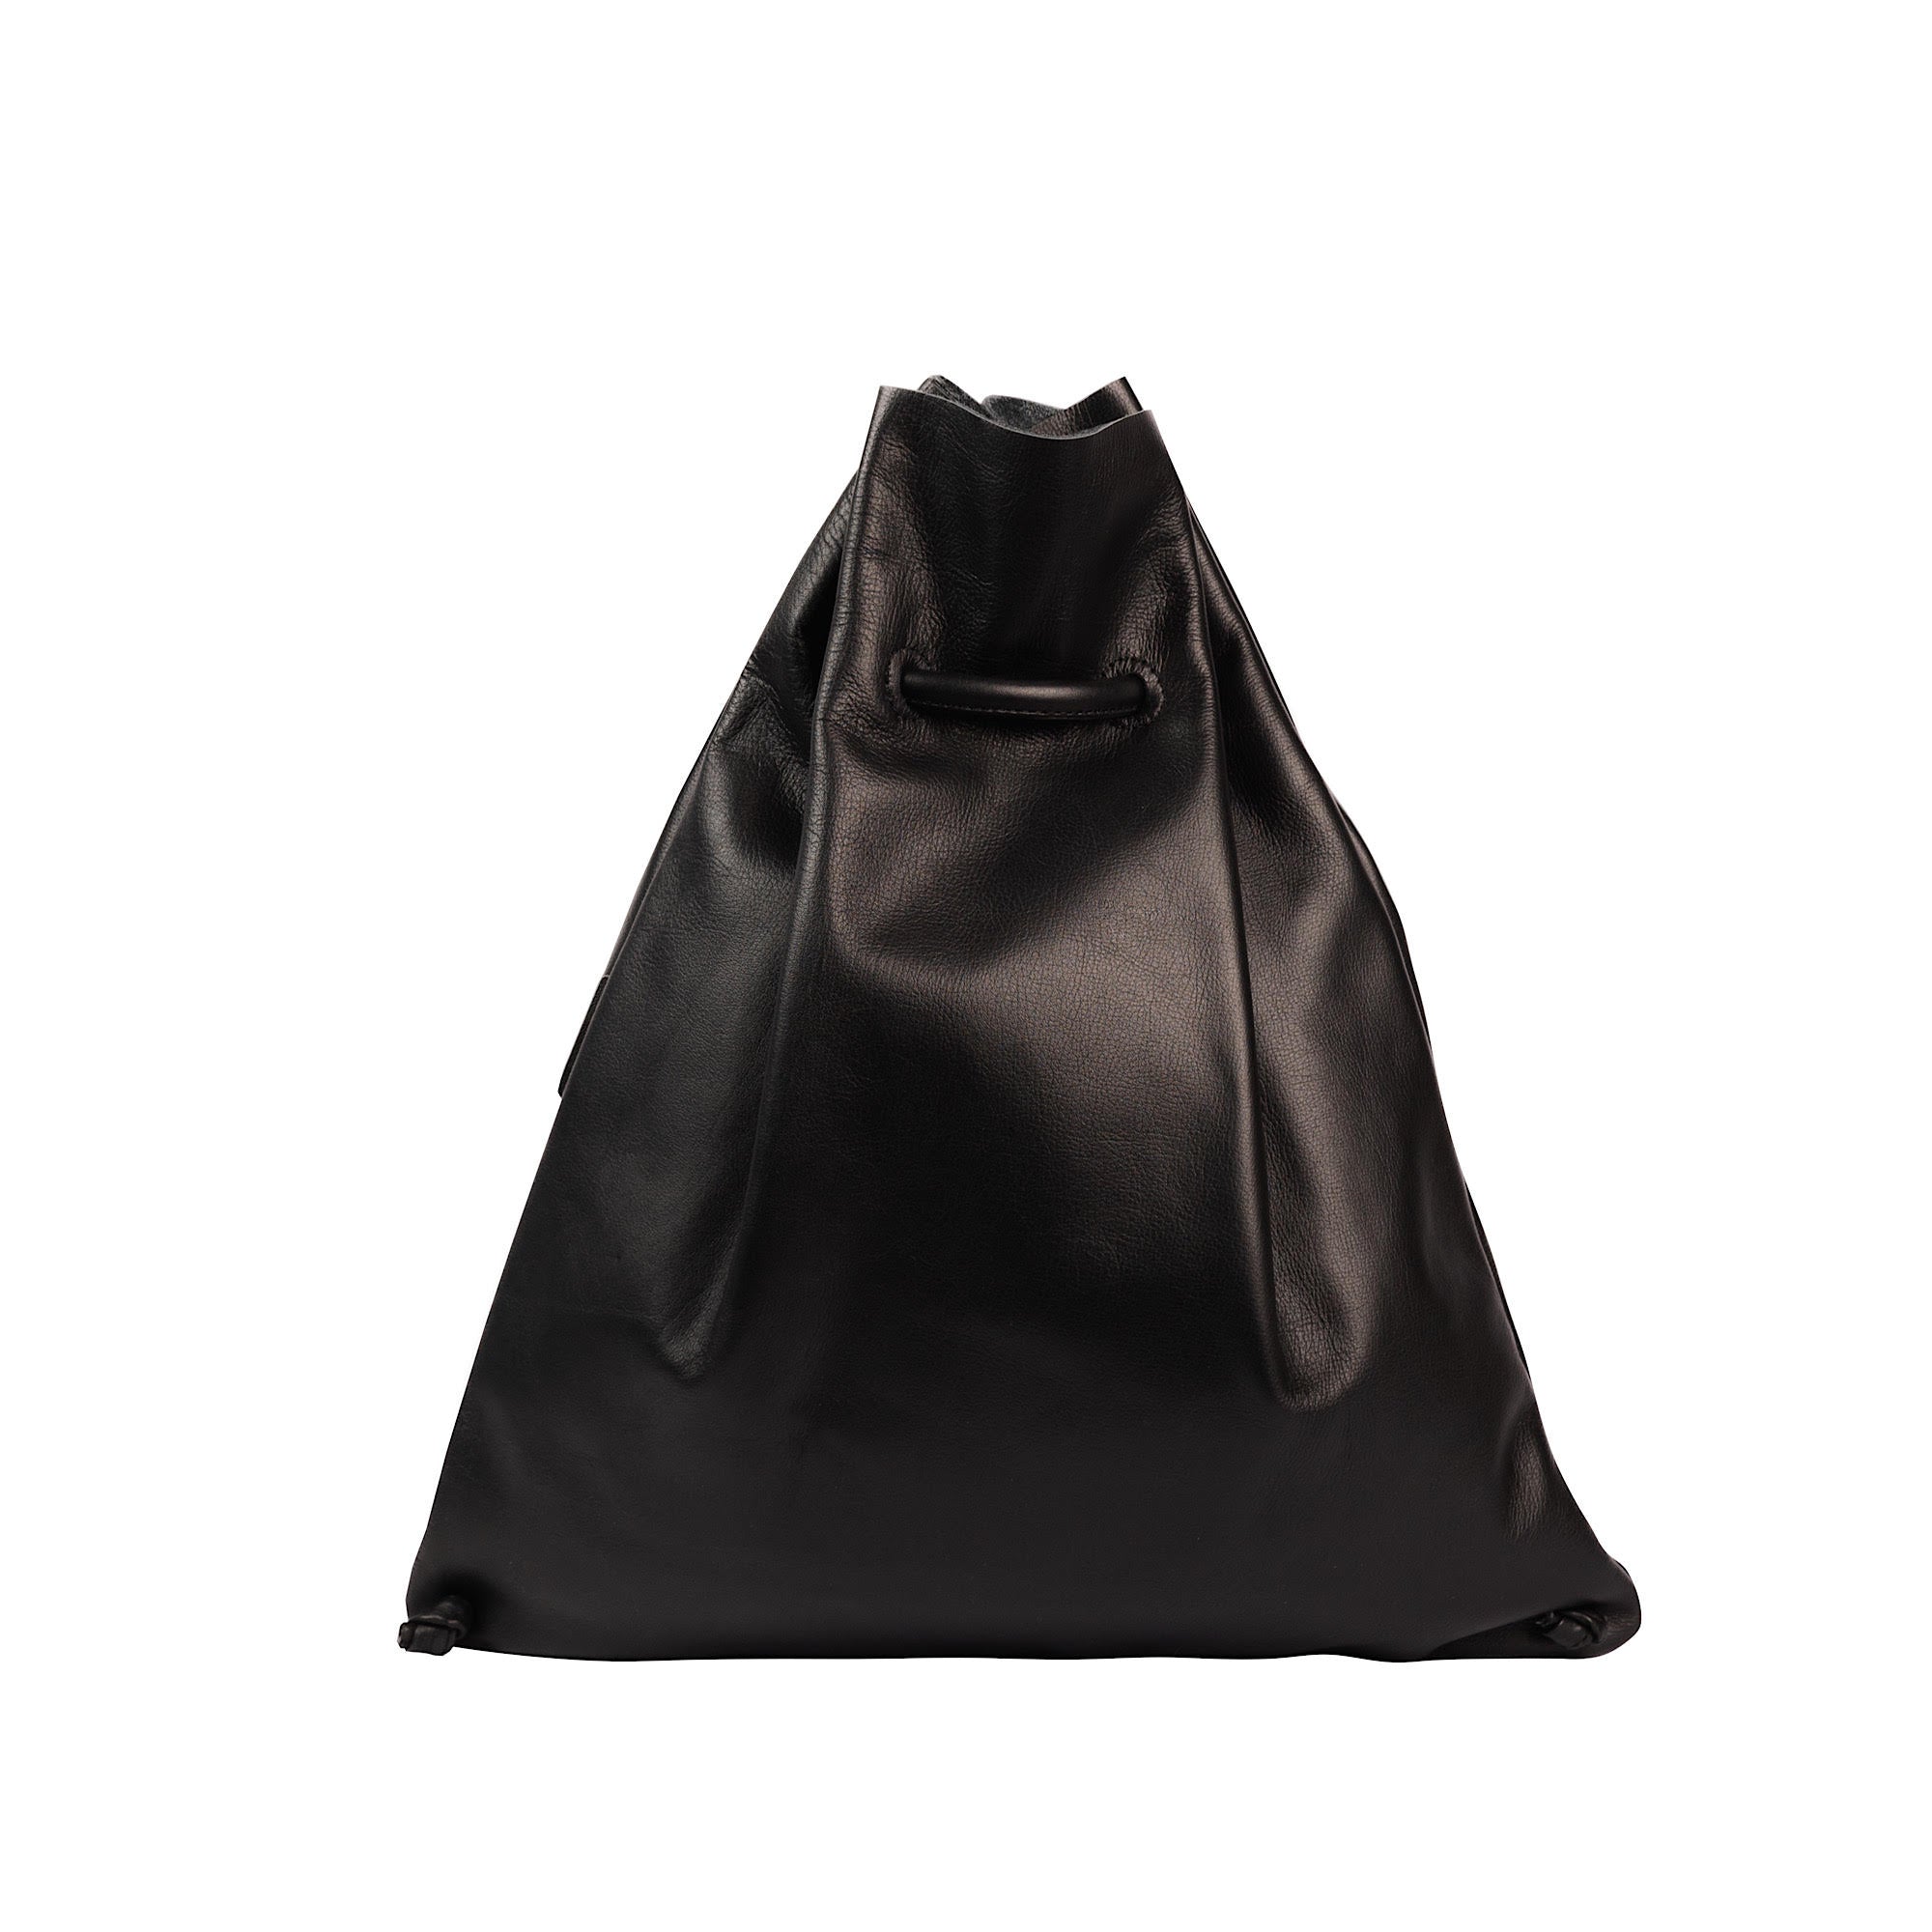 Triangular Backpack Black